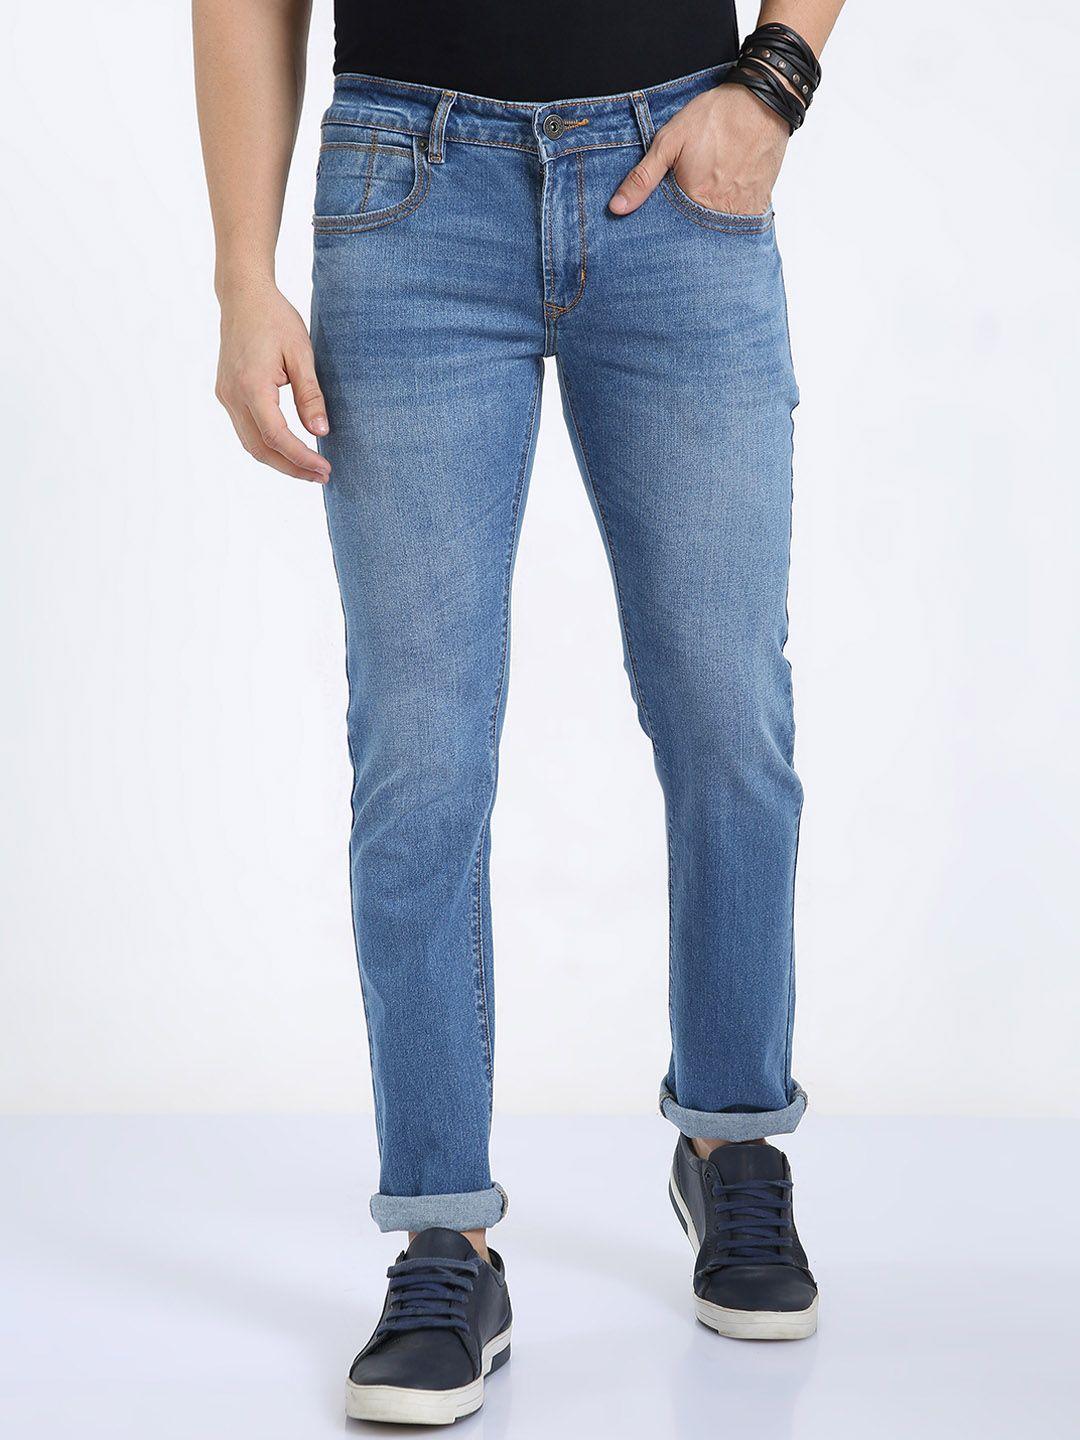 classic-polo-men-jean-slim-fit-heavy-fade-cotton-denim-jeans